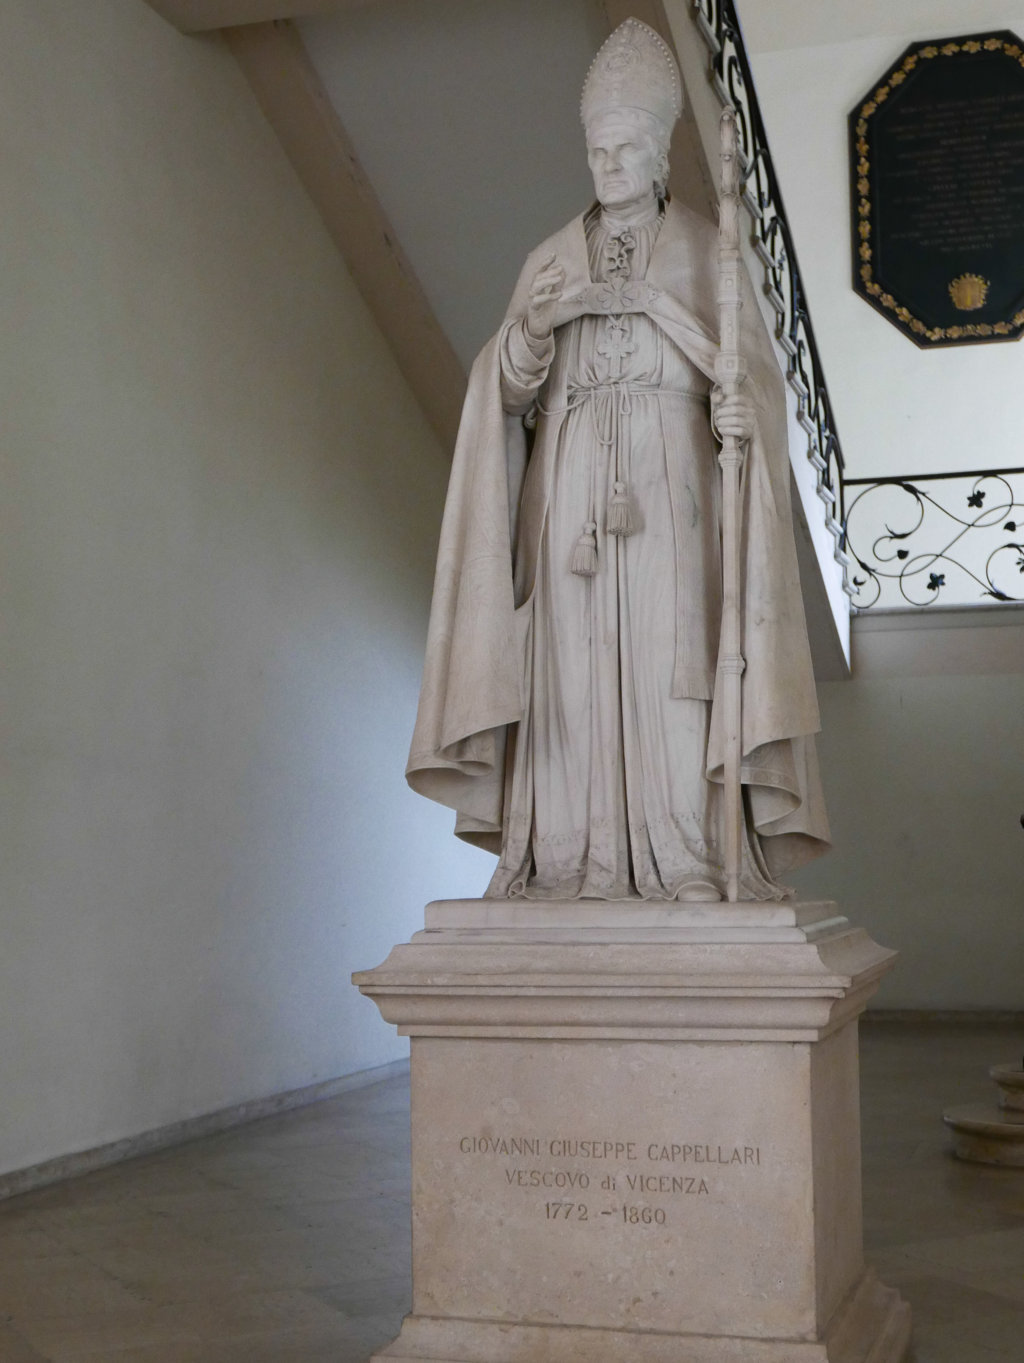 Statua di Giovanni Giuseppe Cappellari (Rigolato, 14 dicembre 1772 – Vicenza, 7 febbraio 1860)